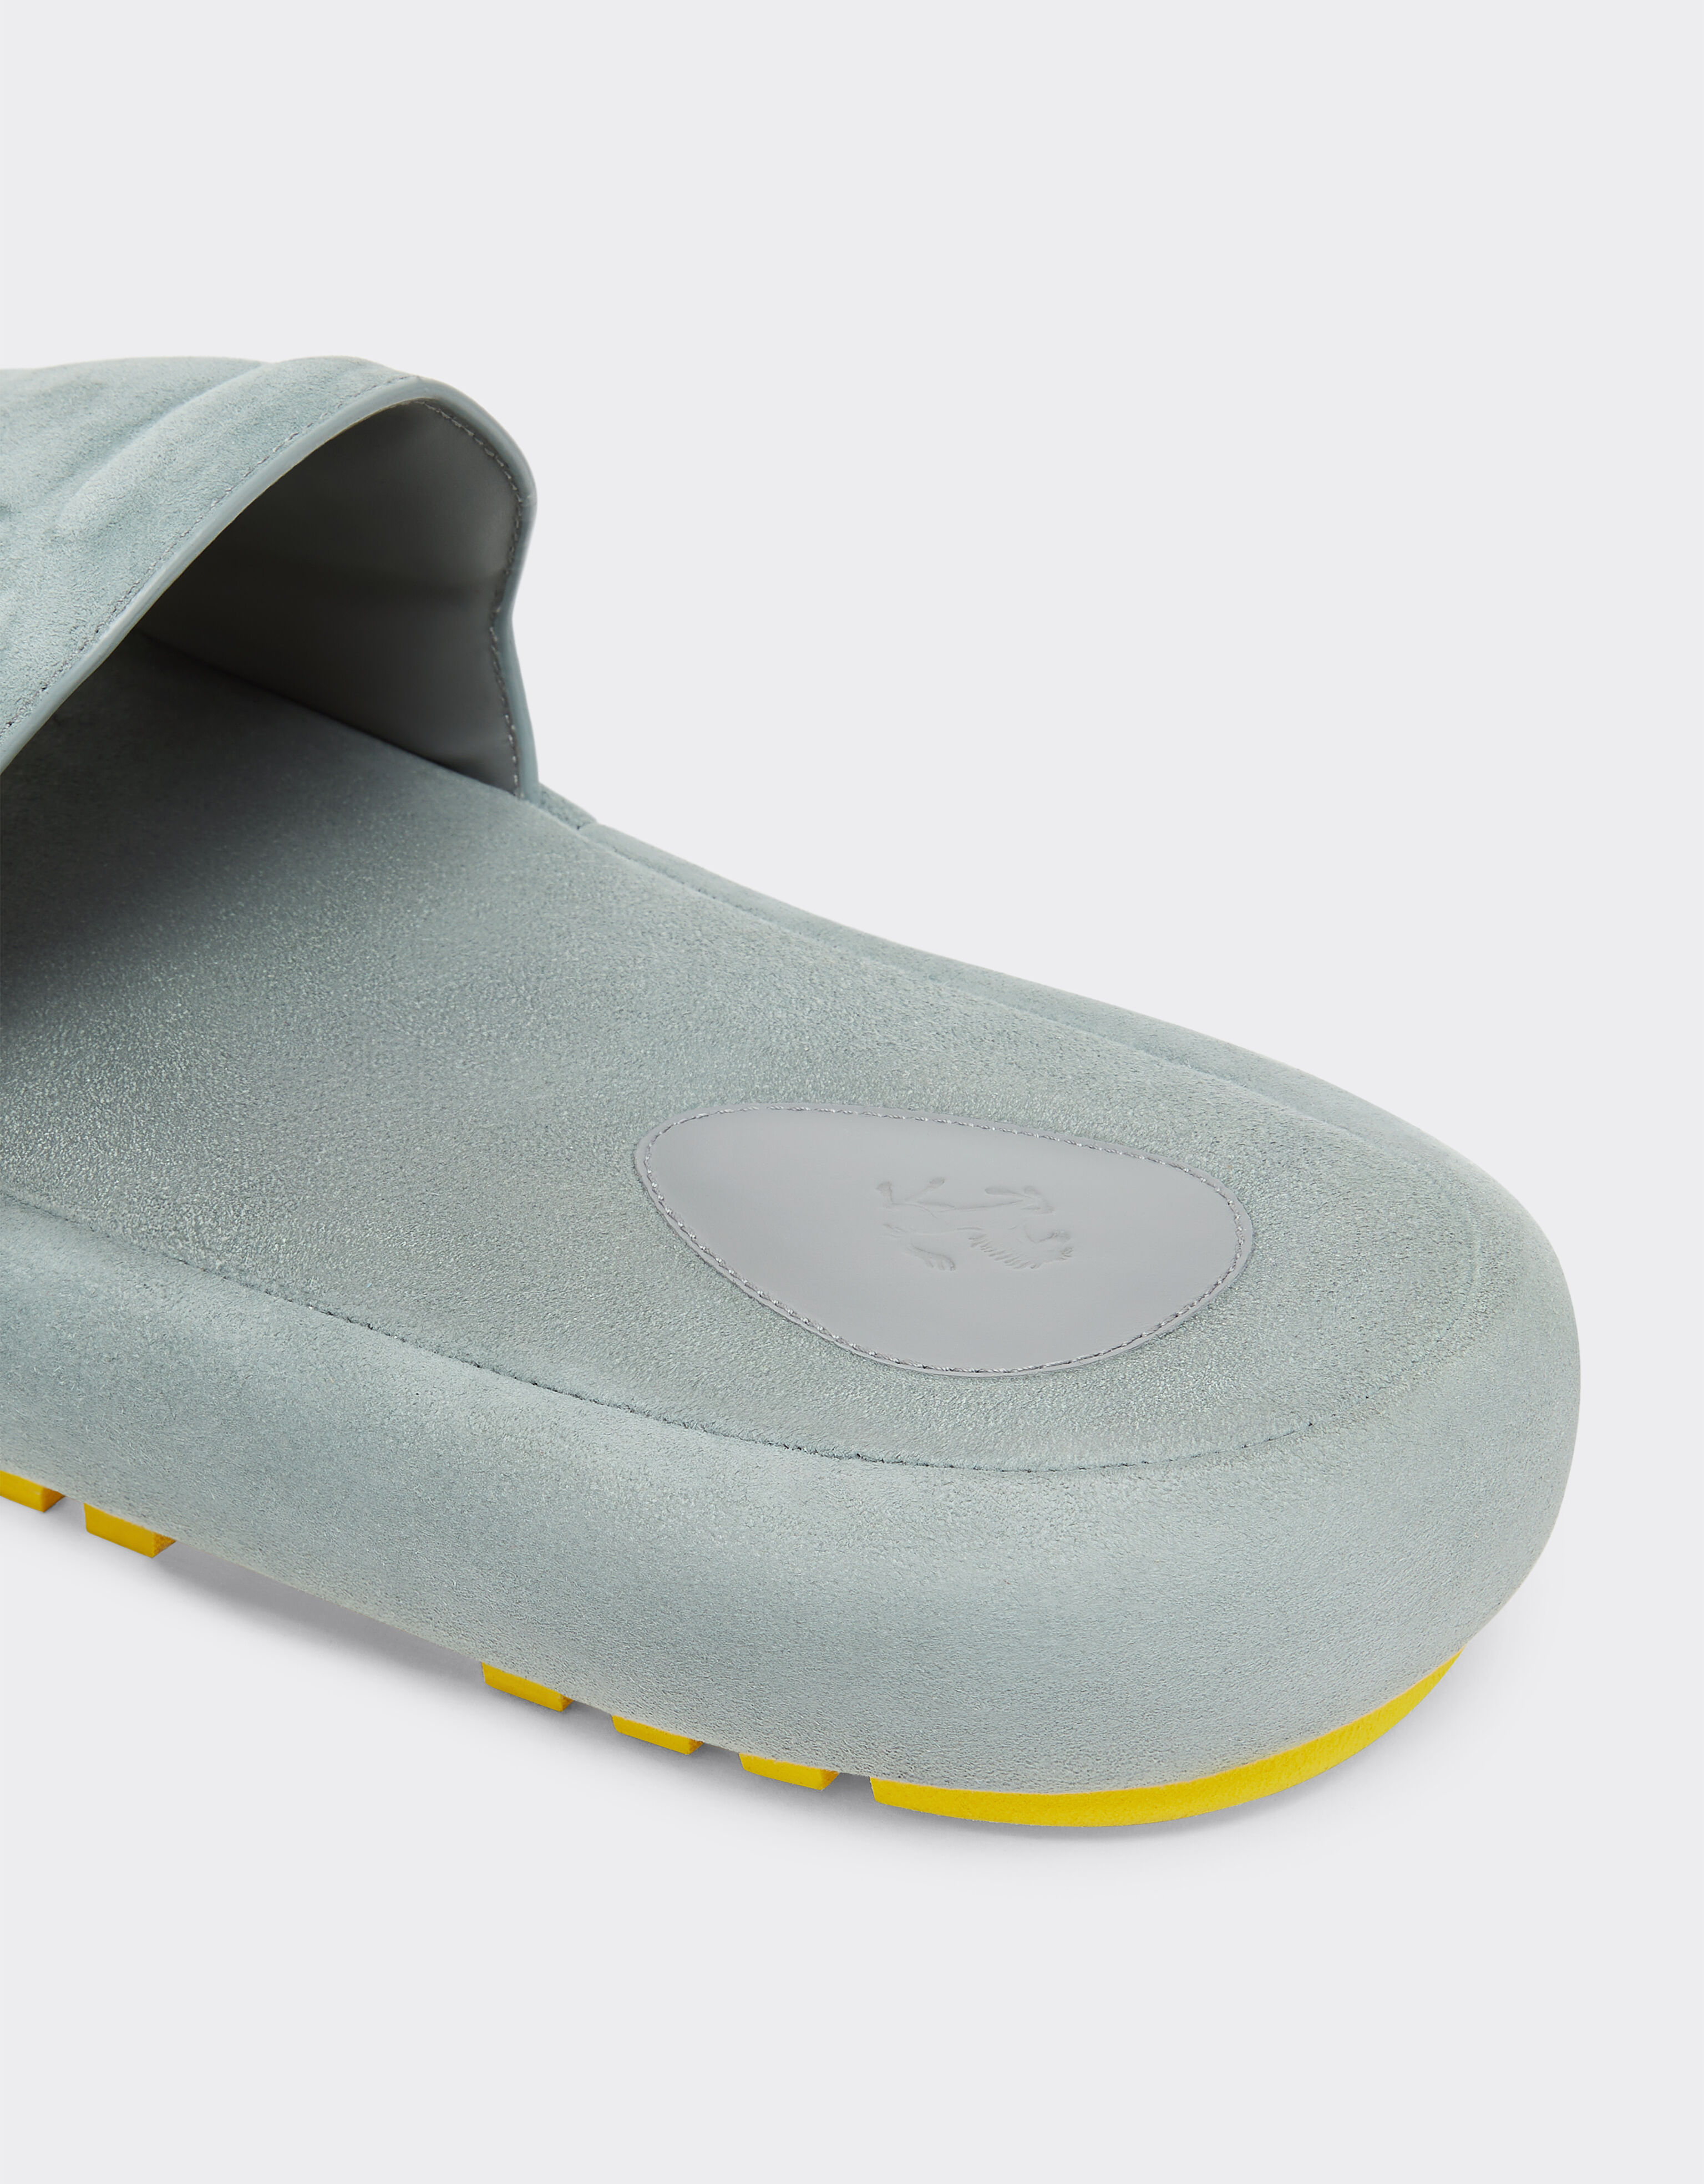 Ferrari Miami Collection slipper sandals in suede Ingrid 21271f